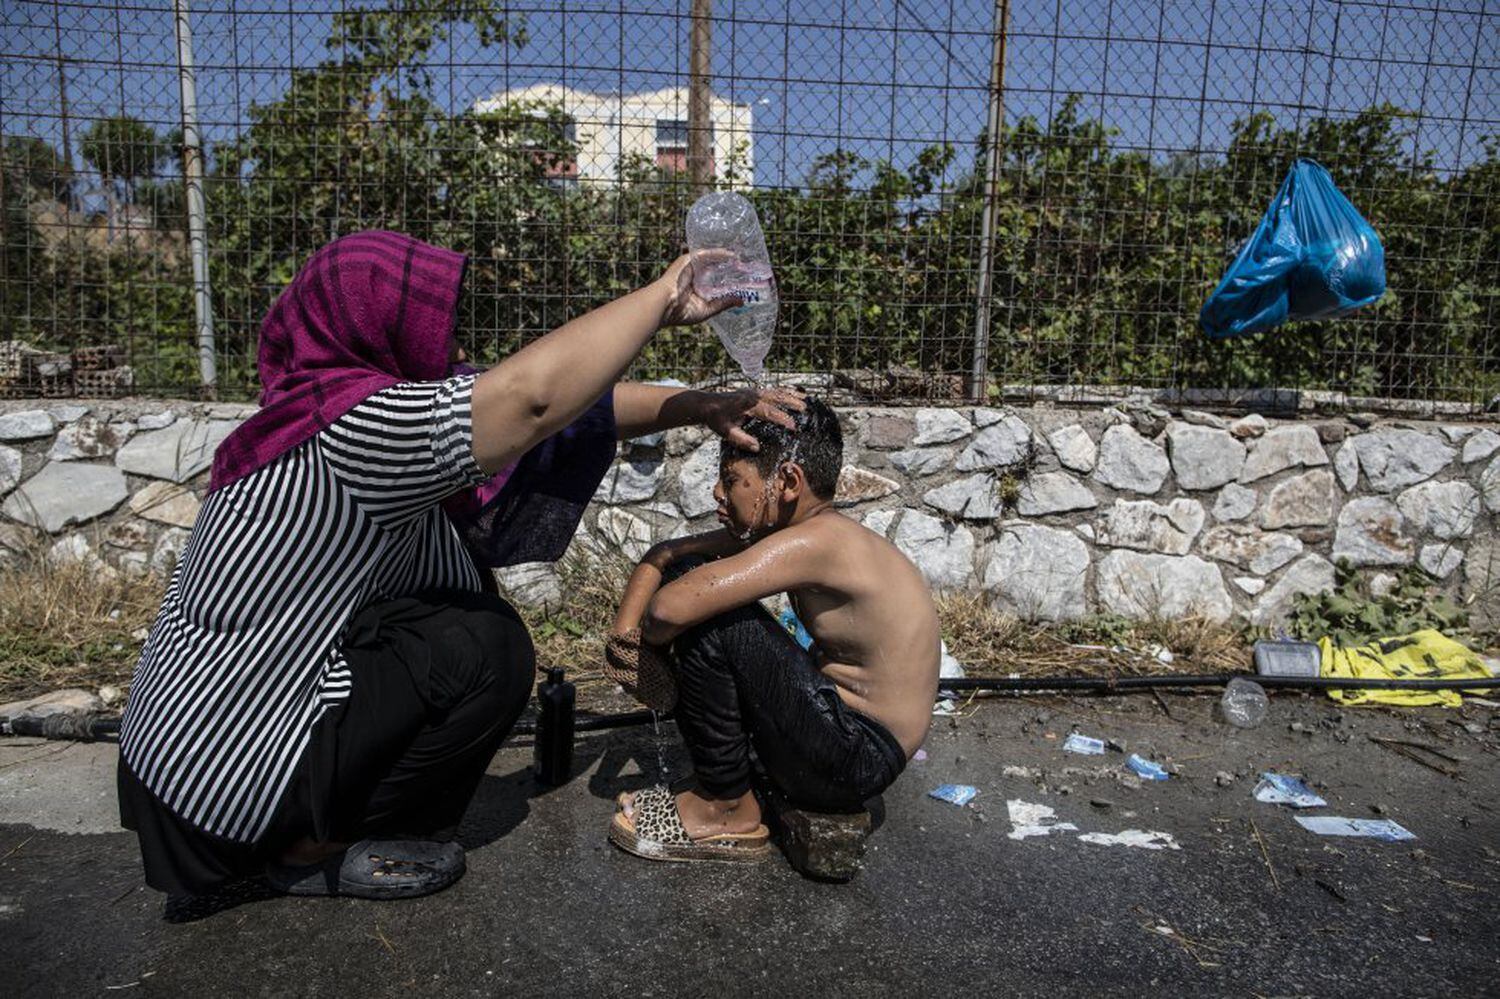 Μια γυναίκα πρόσφυγας πλένει ένα αγόρι με ένα μπουκάλι νερό στον αυτοσχέδιο χώρο στάθμευσης δίπλα σε ένα σούπερ μάρκετ στη Μυτιλήνη της Λέσβου.